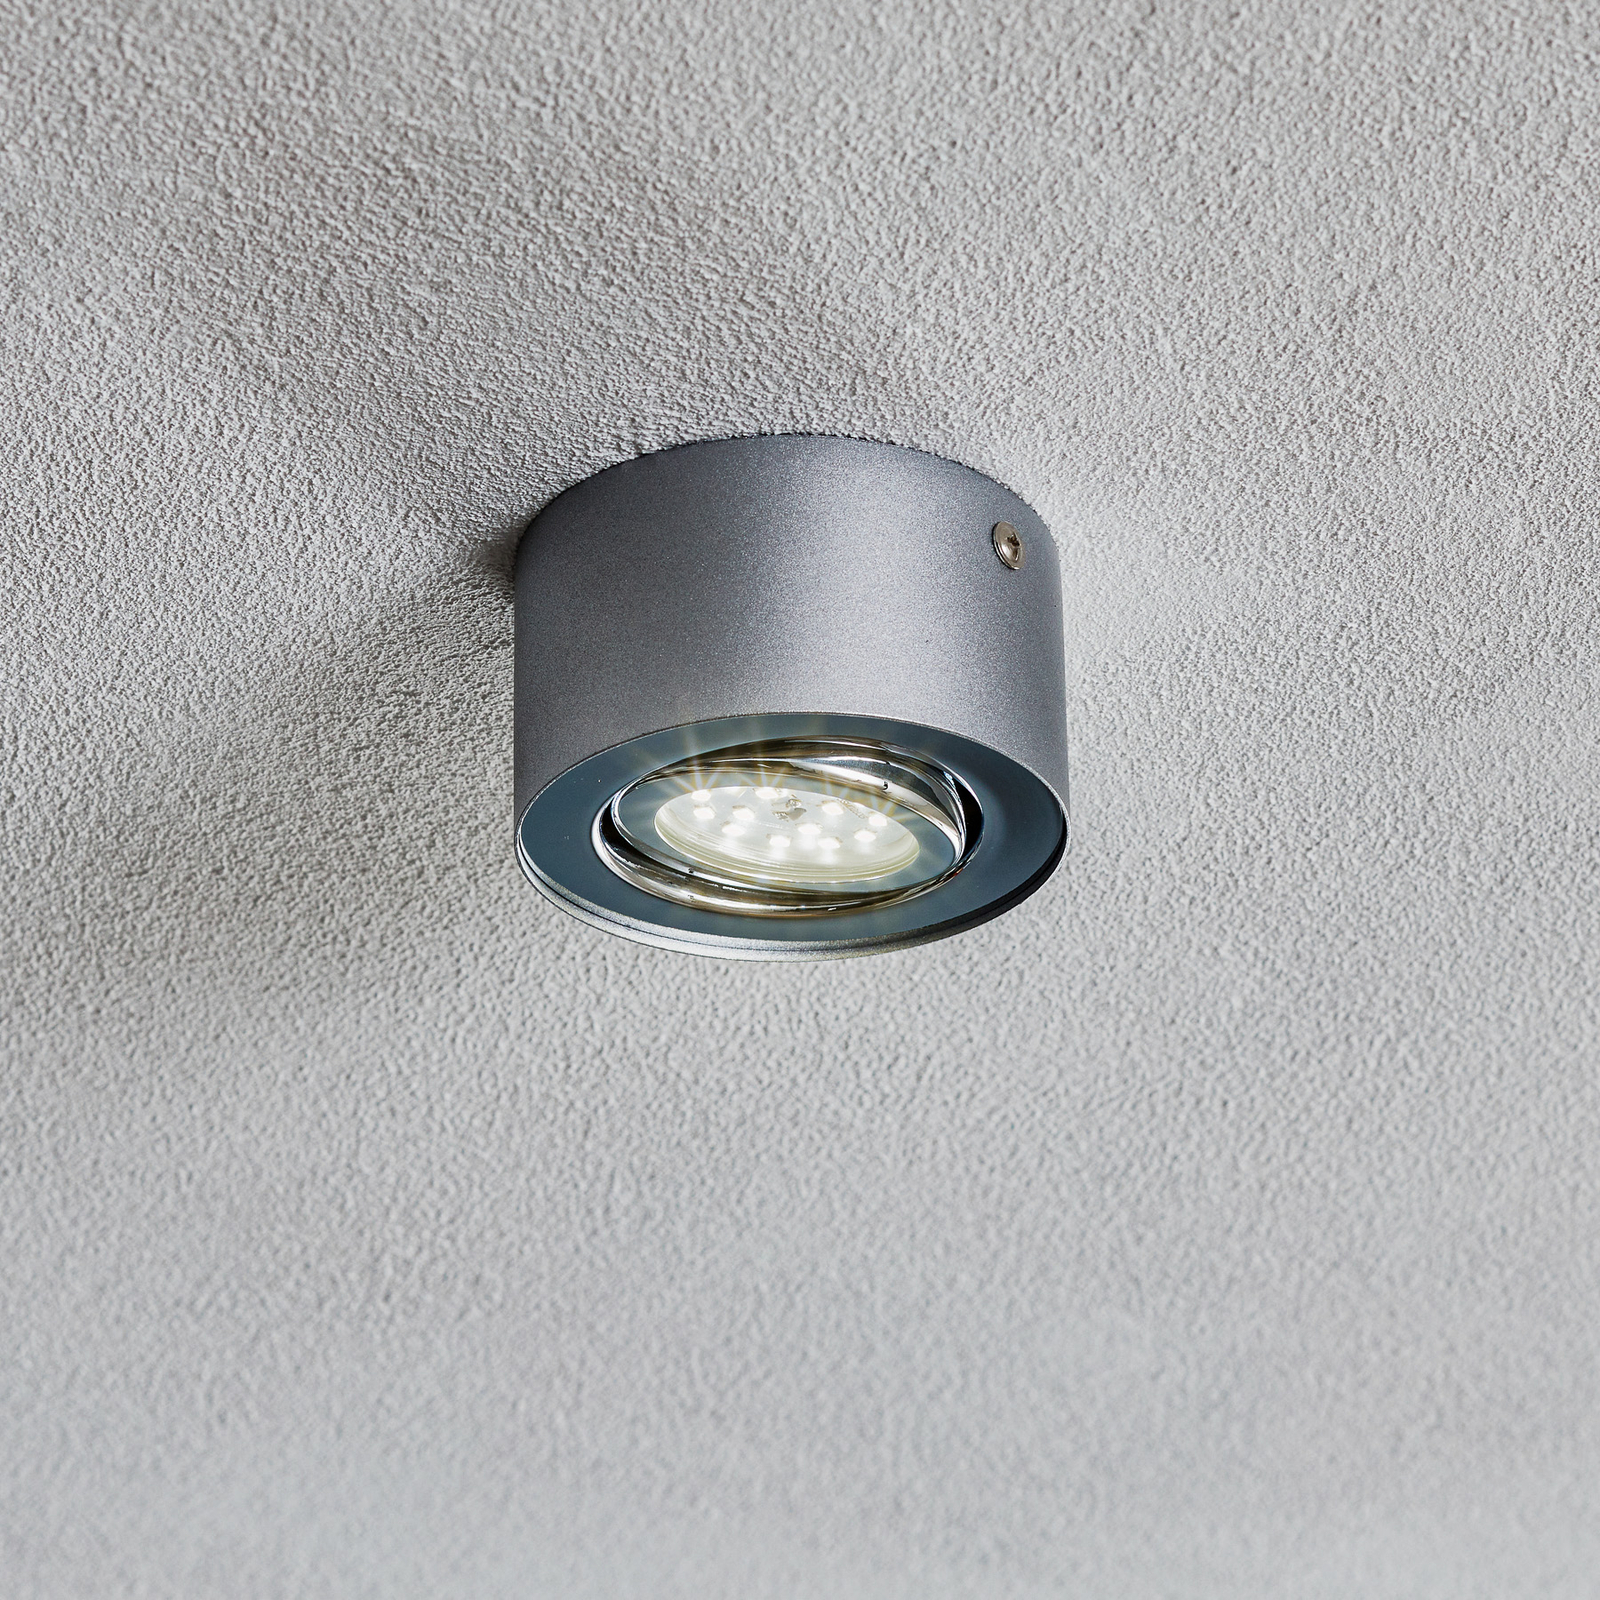 Eik anders vijandigheid Spot pour plafond LED Tube 7121-014 en argenté | Luminaire.fr